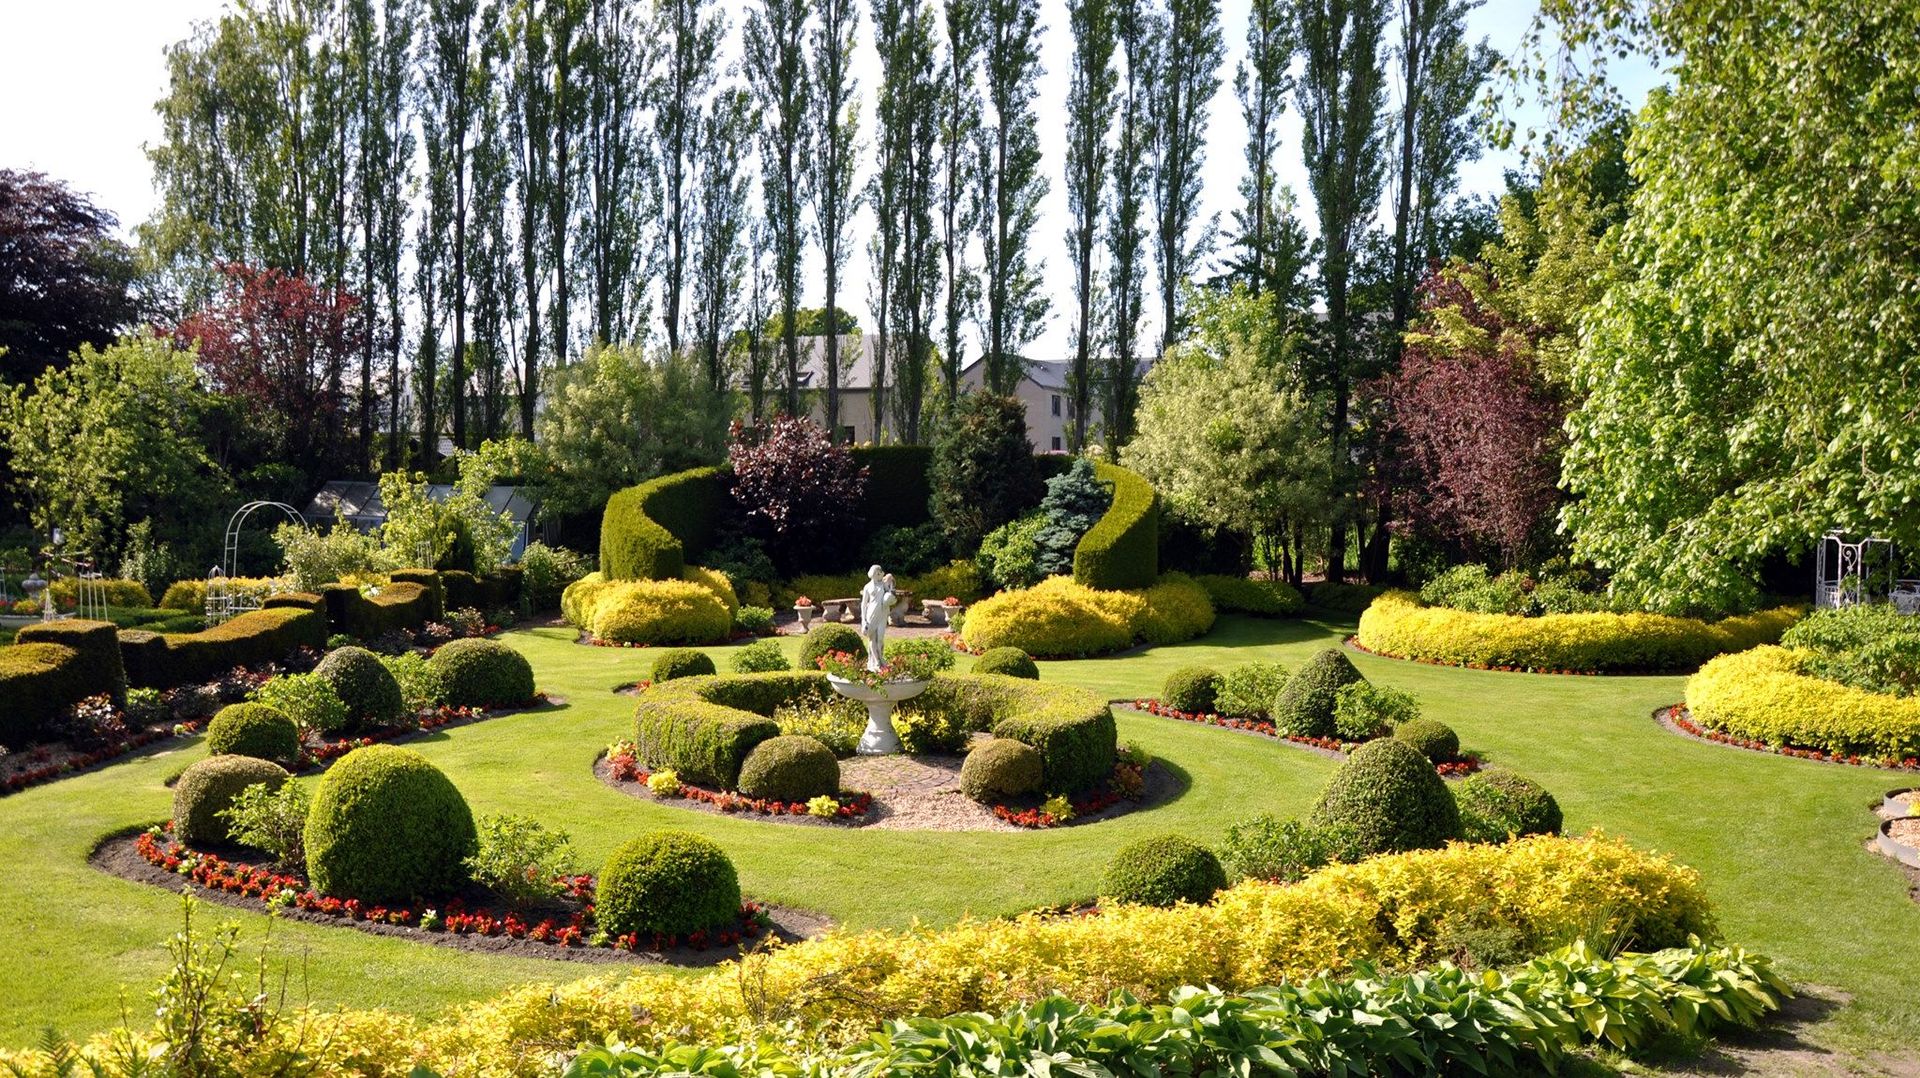 Week-end Parcs et Jardins : découvrez le Parc Aurélie à Bastogne